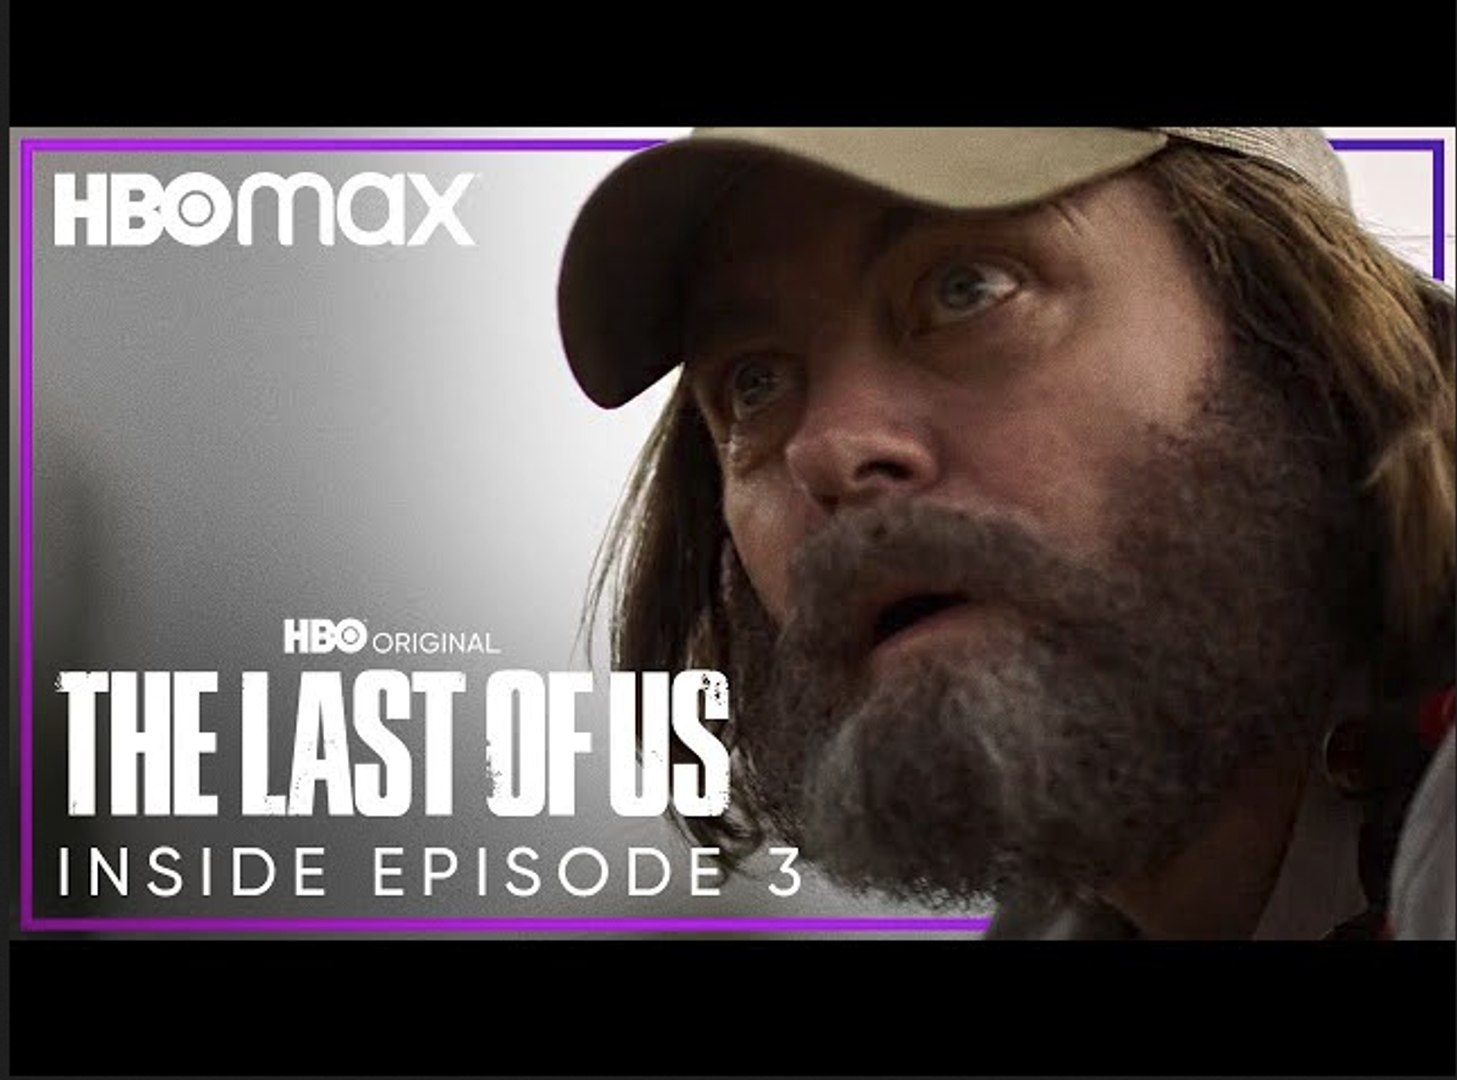 The Last of Us S01 E03 Trailer